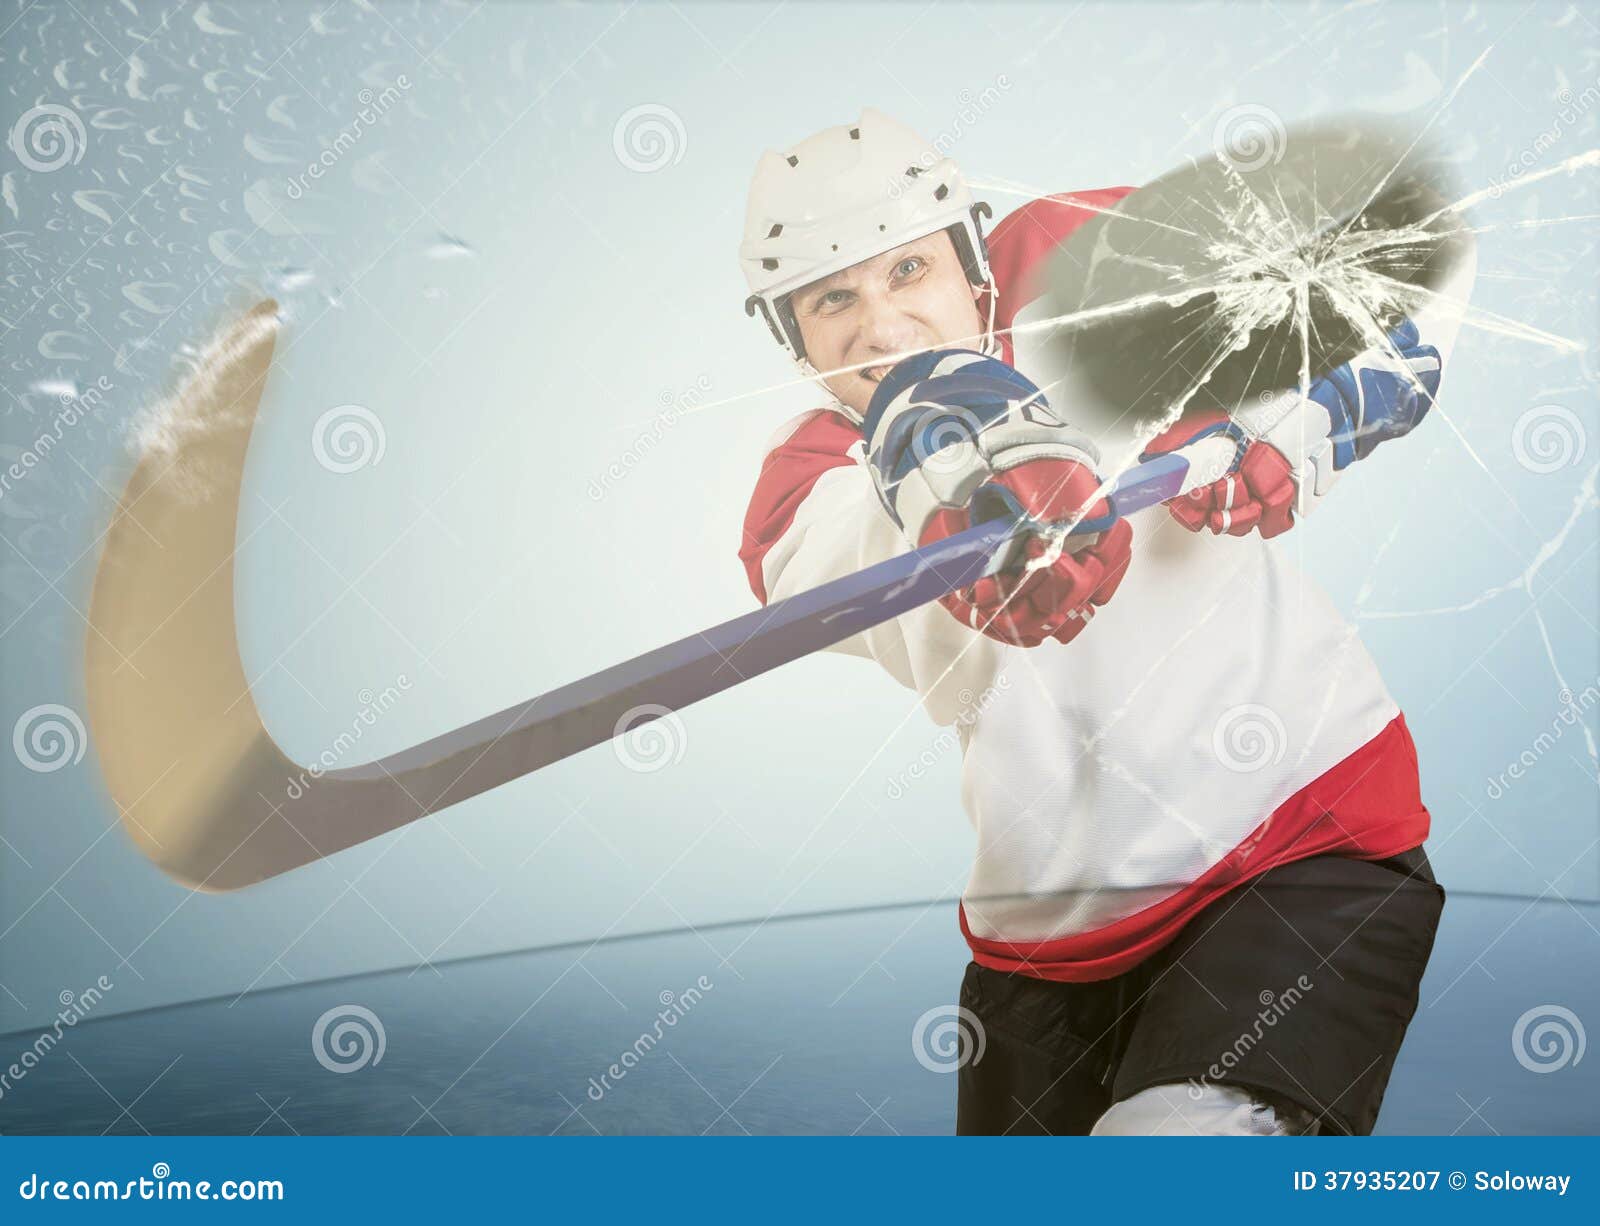 ice hockey puck hit the opponent visor